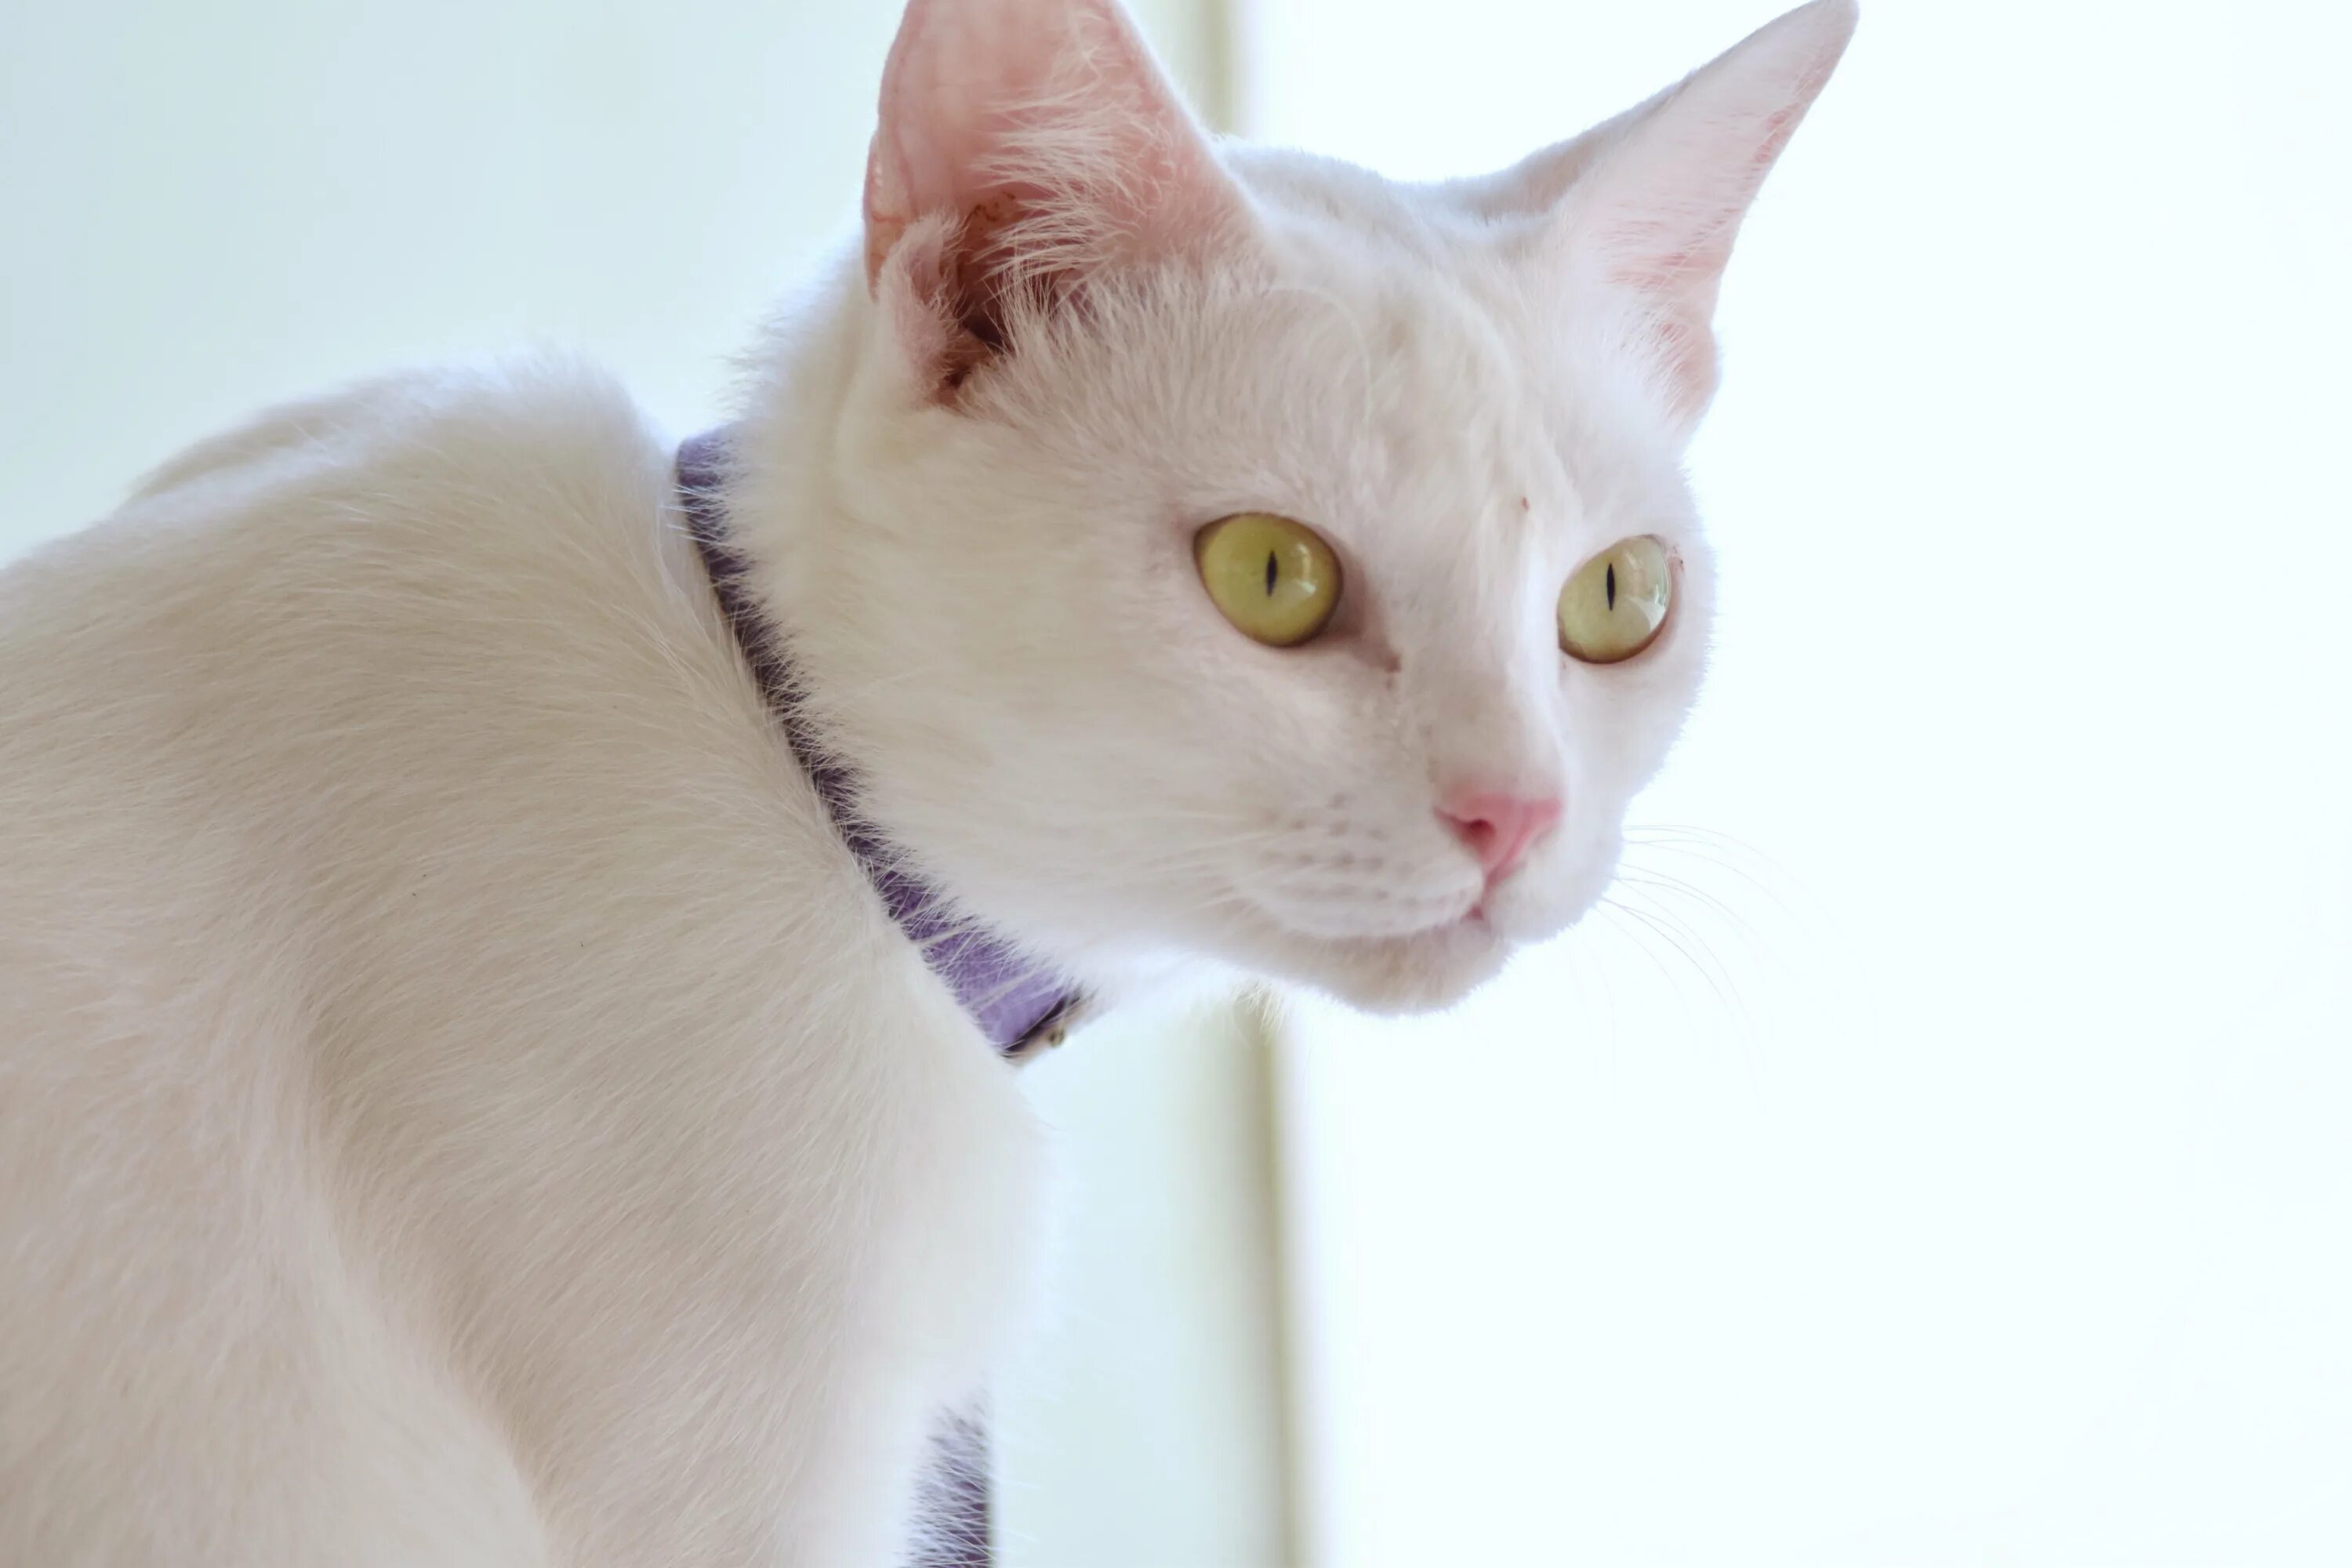 Кошка с желтыми глазами порода. Европейская короткошерстная кошка белая. Турецкая ангора короткошерстная. Американская короткошёрстная кошка белая. Европейская гладкошерстная кошка белая.